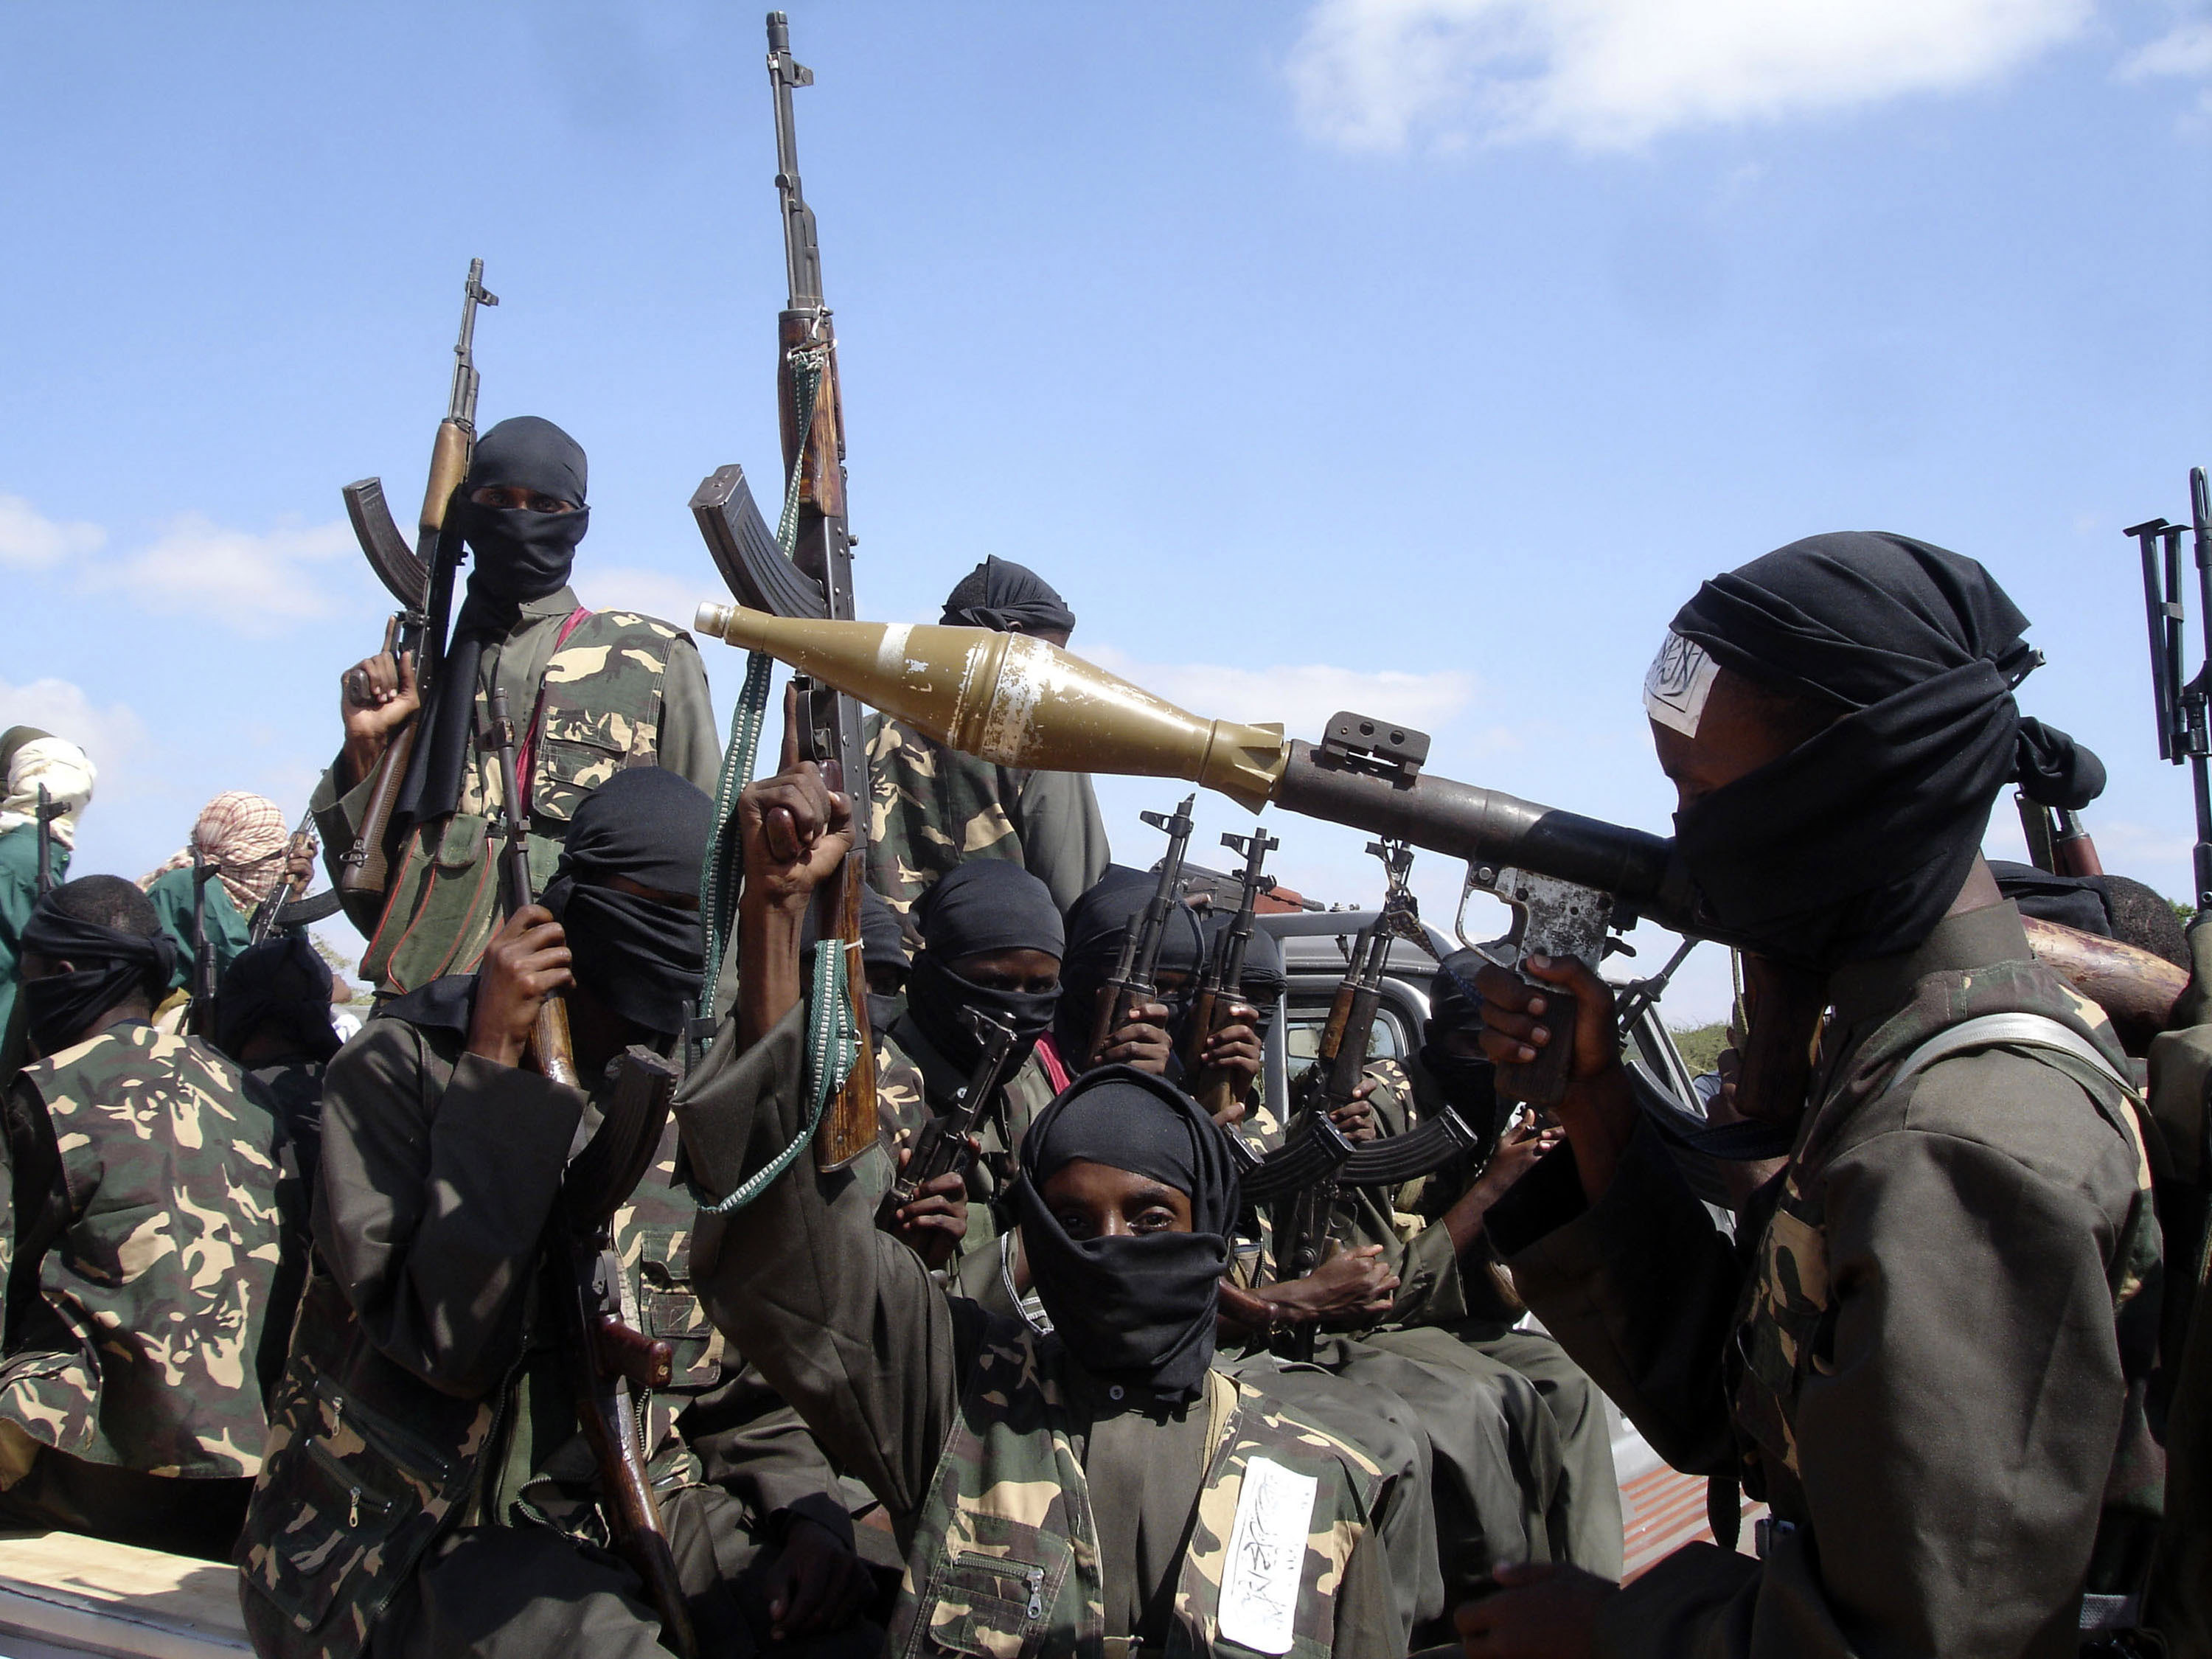 Al Sudani tenía “una larga historia como terrorista en Somalia”. Antes de unirse al autoproclamado Estado Islámico, el Departamento de Estado estadounidense lo tenía en la mira por su rol en el grupo yihadista Al Shabab. (AP)